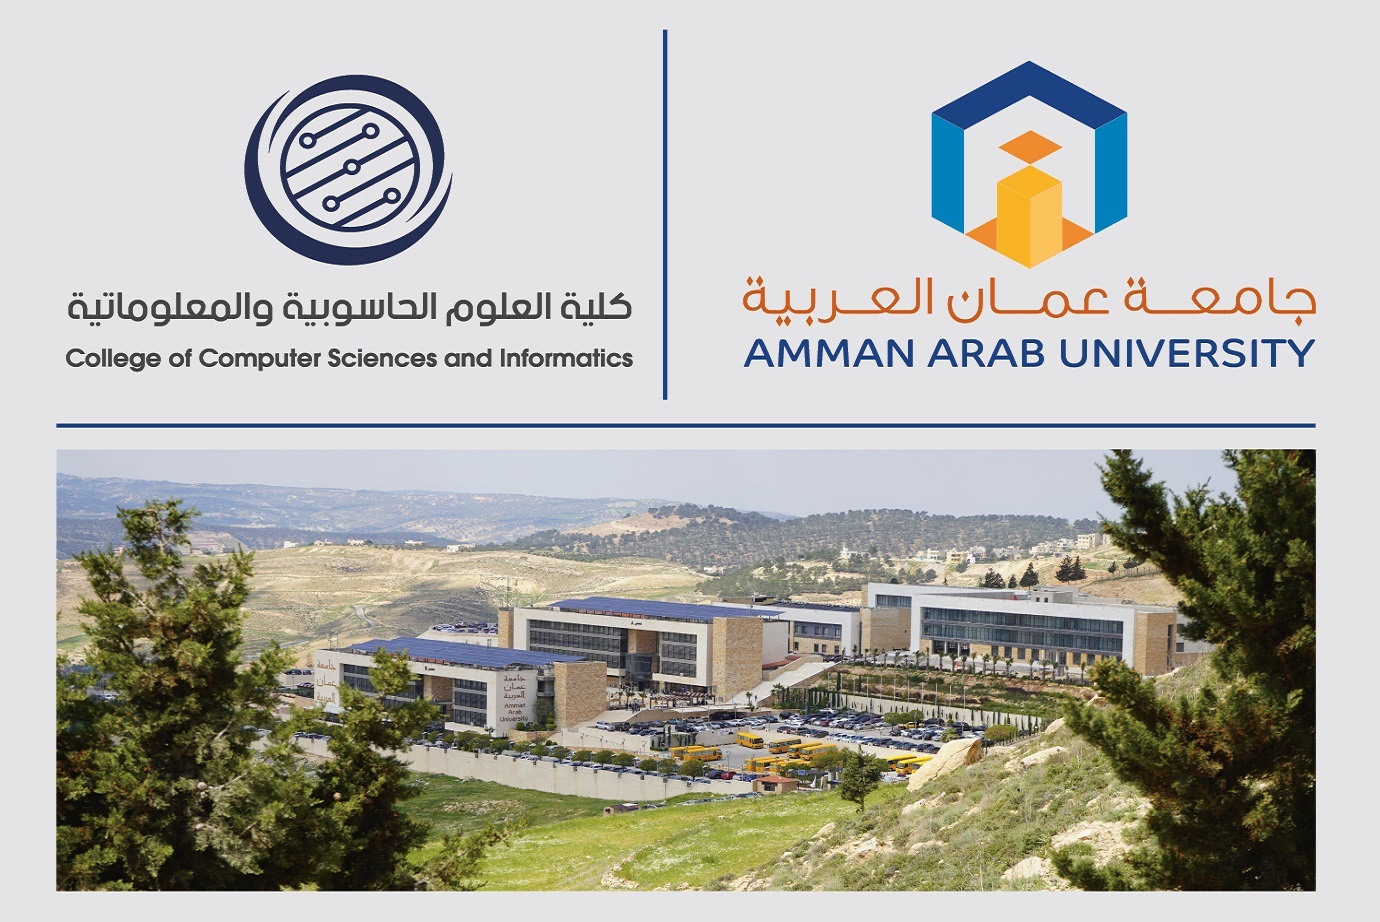  المجلس الاستشاري لقسم هندسة البرمجيات في "عمان العربية" يناقش خطط التطوير الأكاديمي والتأهيل لسوق العمل